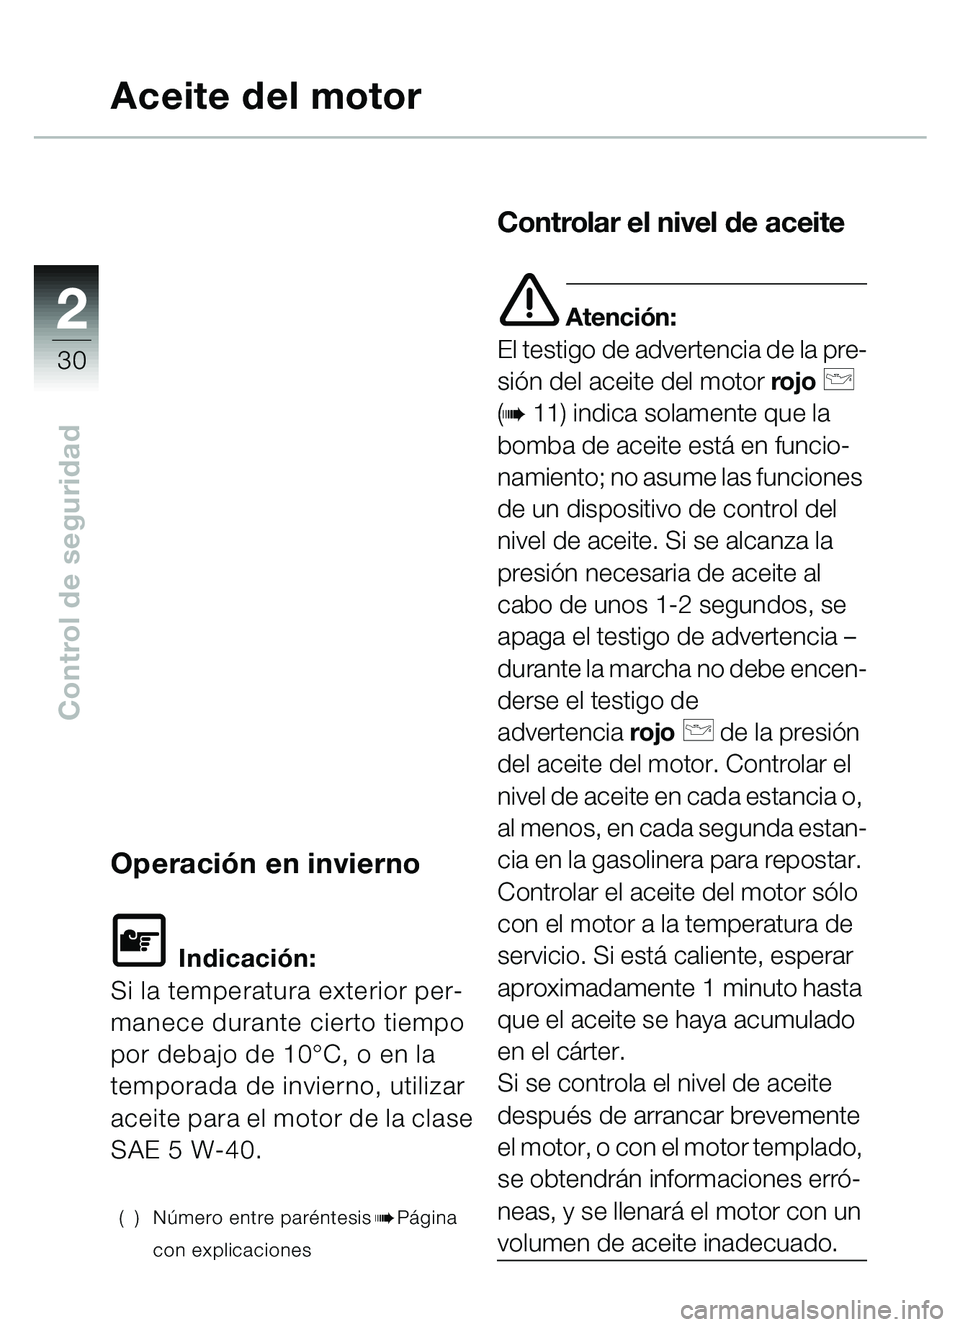 BMW MOTORRAD C1 2000  Manual de instrucciones (in Spanish) 2
30
Control de seguridad
Aceite del motor
Operación en invierno
L Indicación:
Si la temperatura exterior per-
manece durante cierto tiempo 
por debajo de 10°C, o en la 
temporada de invierno, util